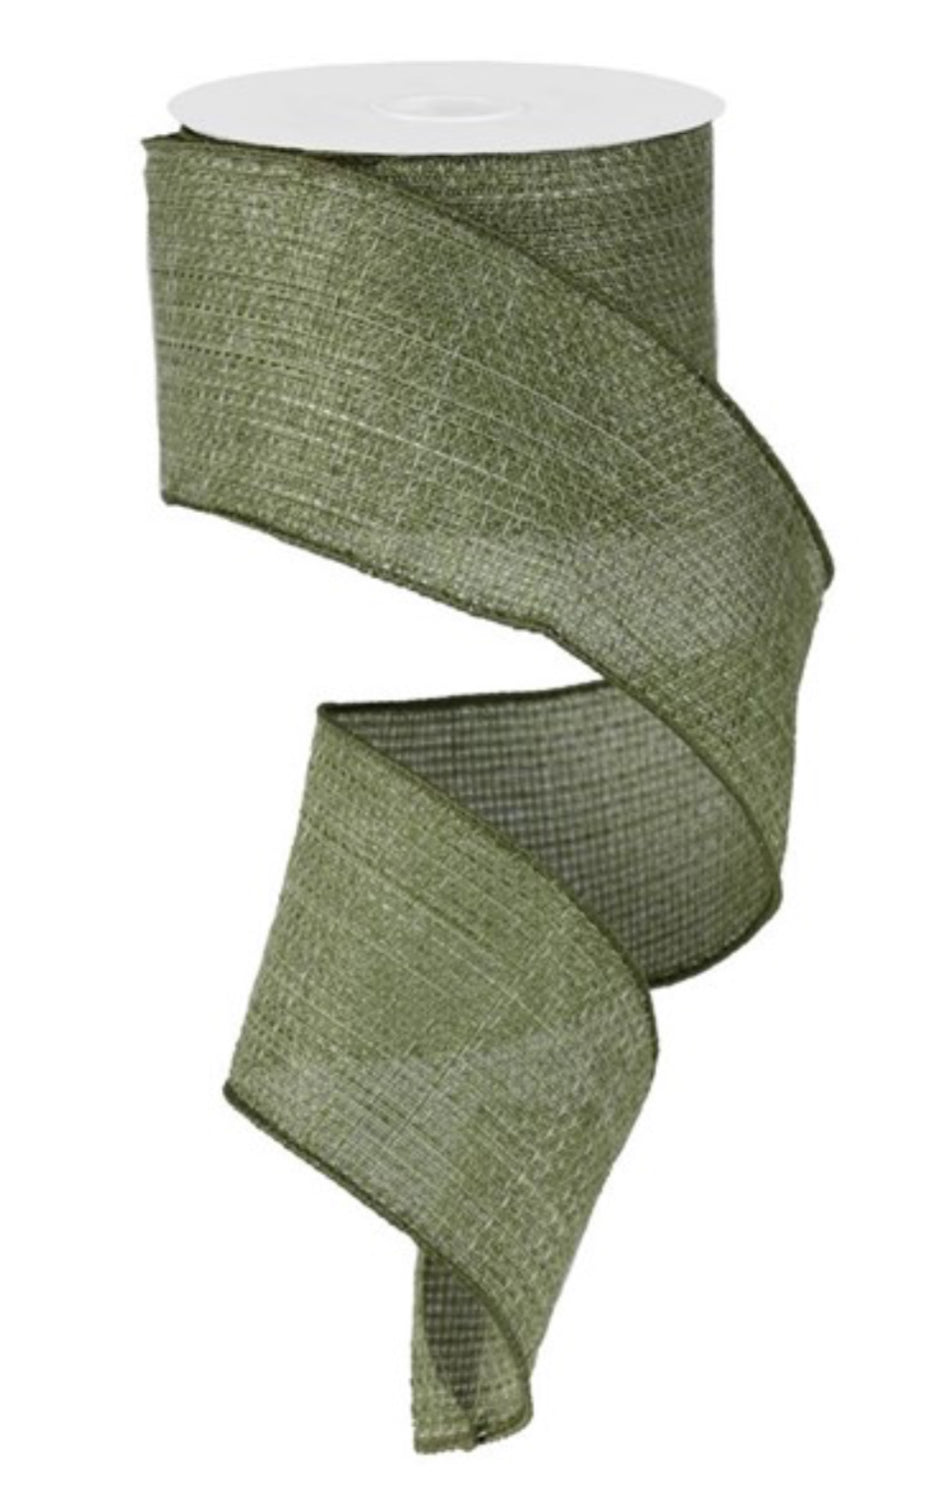 Fern green solid cross weave wired ribbon, 2.5